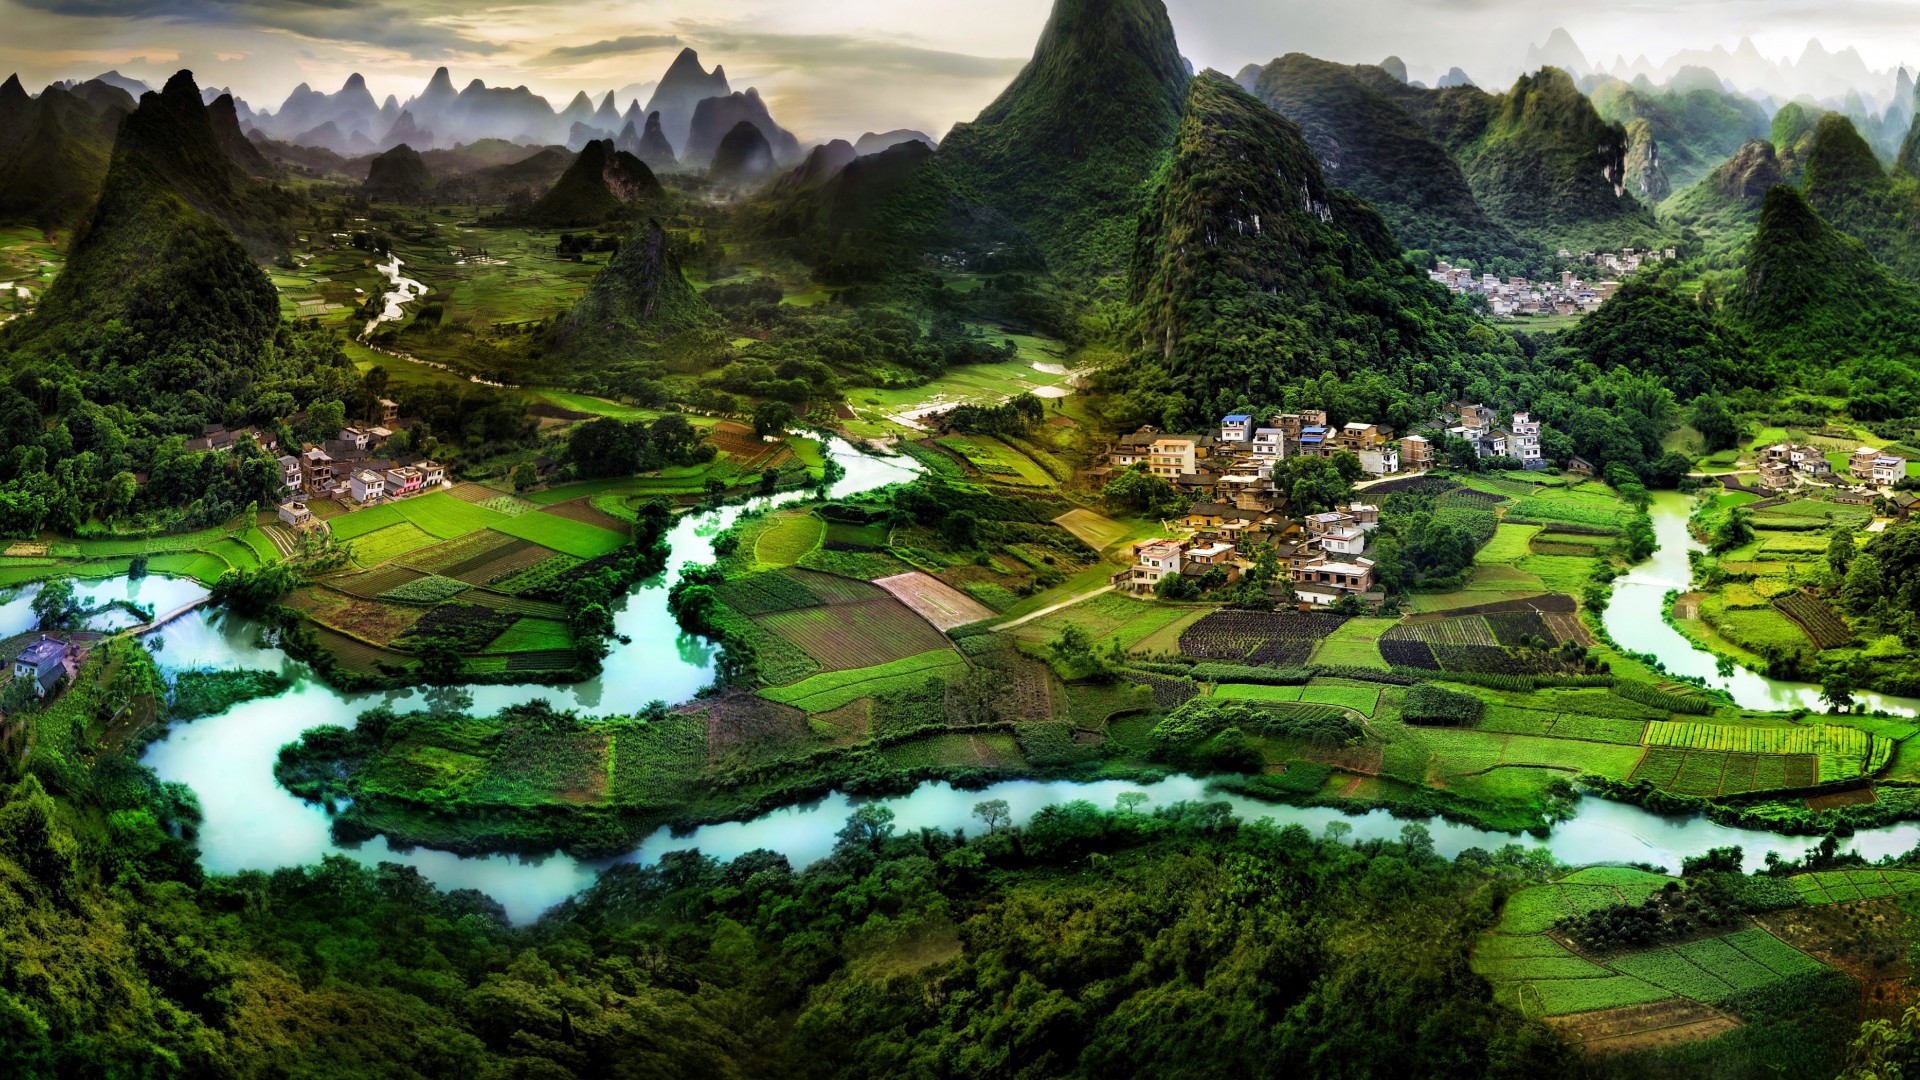 广西桂林山水风景图片 桂林山水风光桌面壁纸